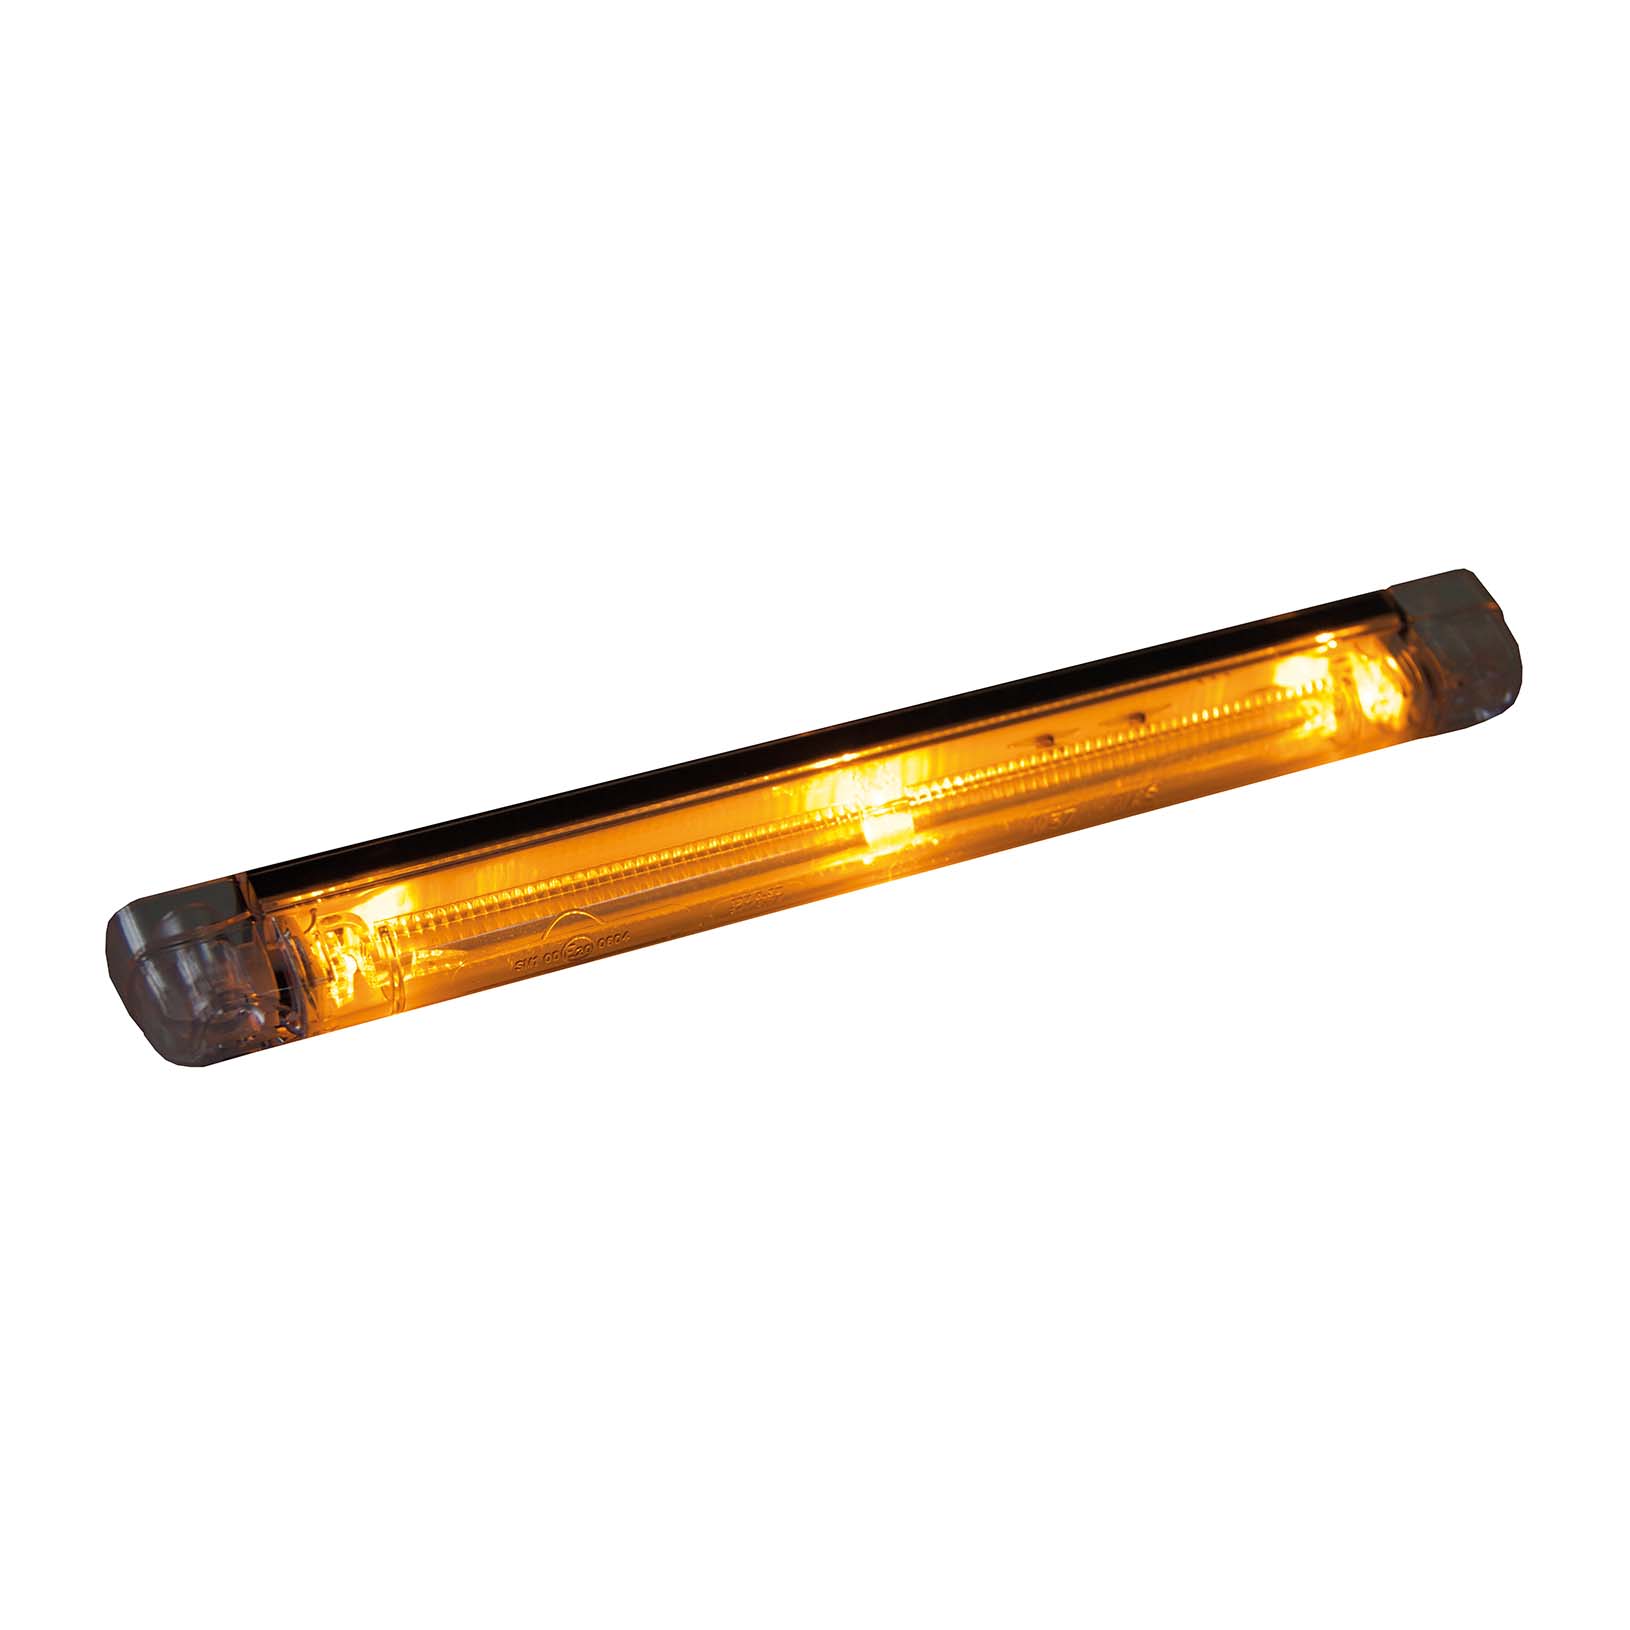 Strands fiberoptisk sidomarkeringsljus, orange LED, 12-24V-image